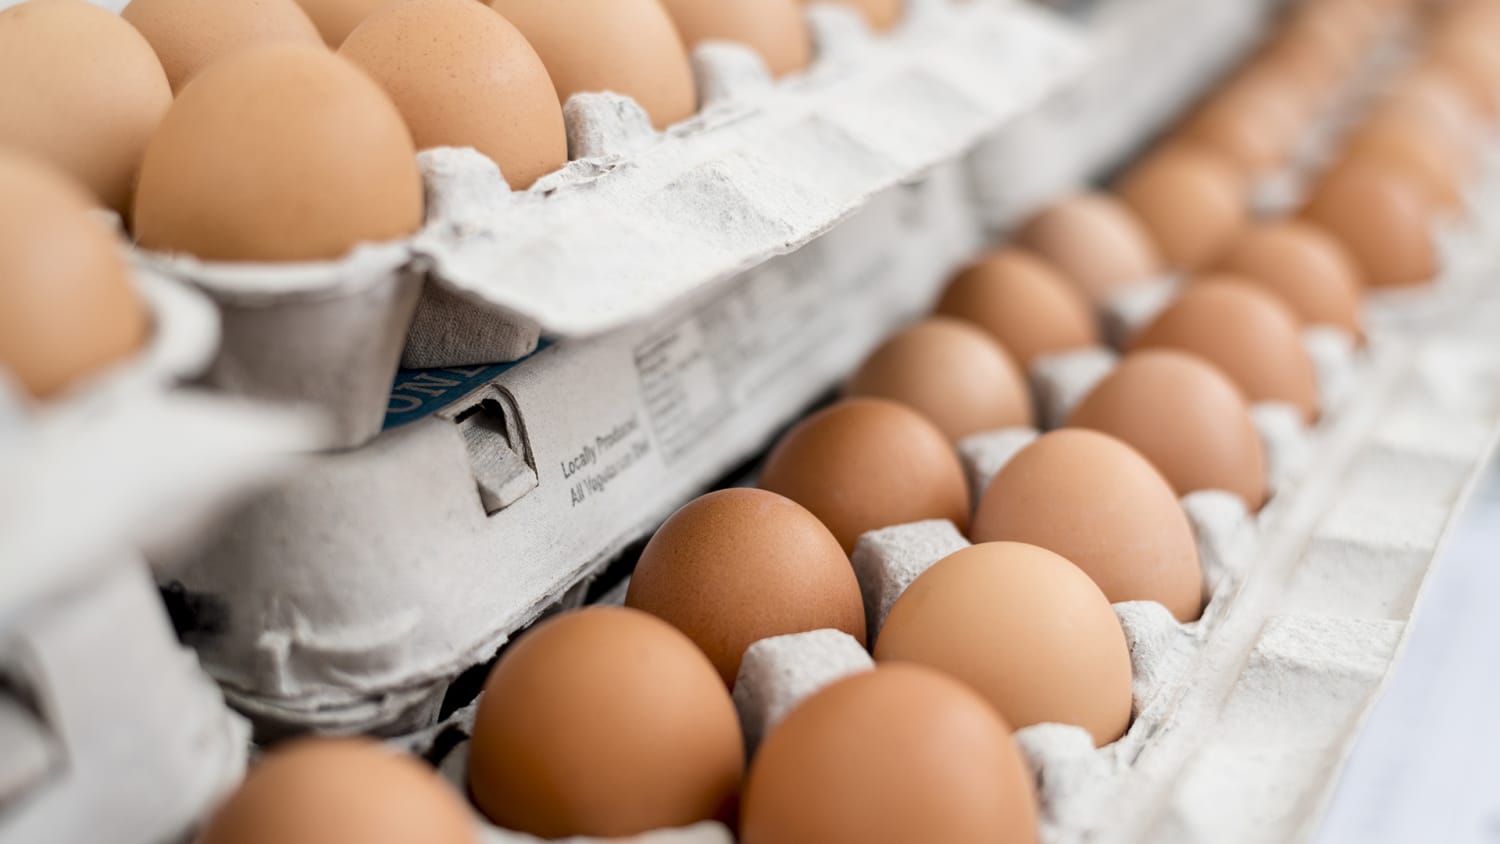 Цены на яйца в странах. Упаковка яиц сверху. Упаковка яиц лето. Фон продажа яиц.